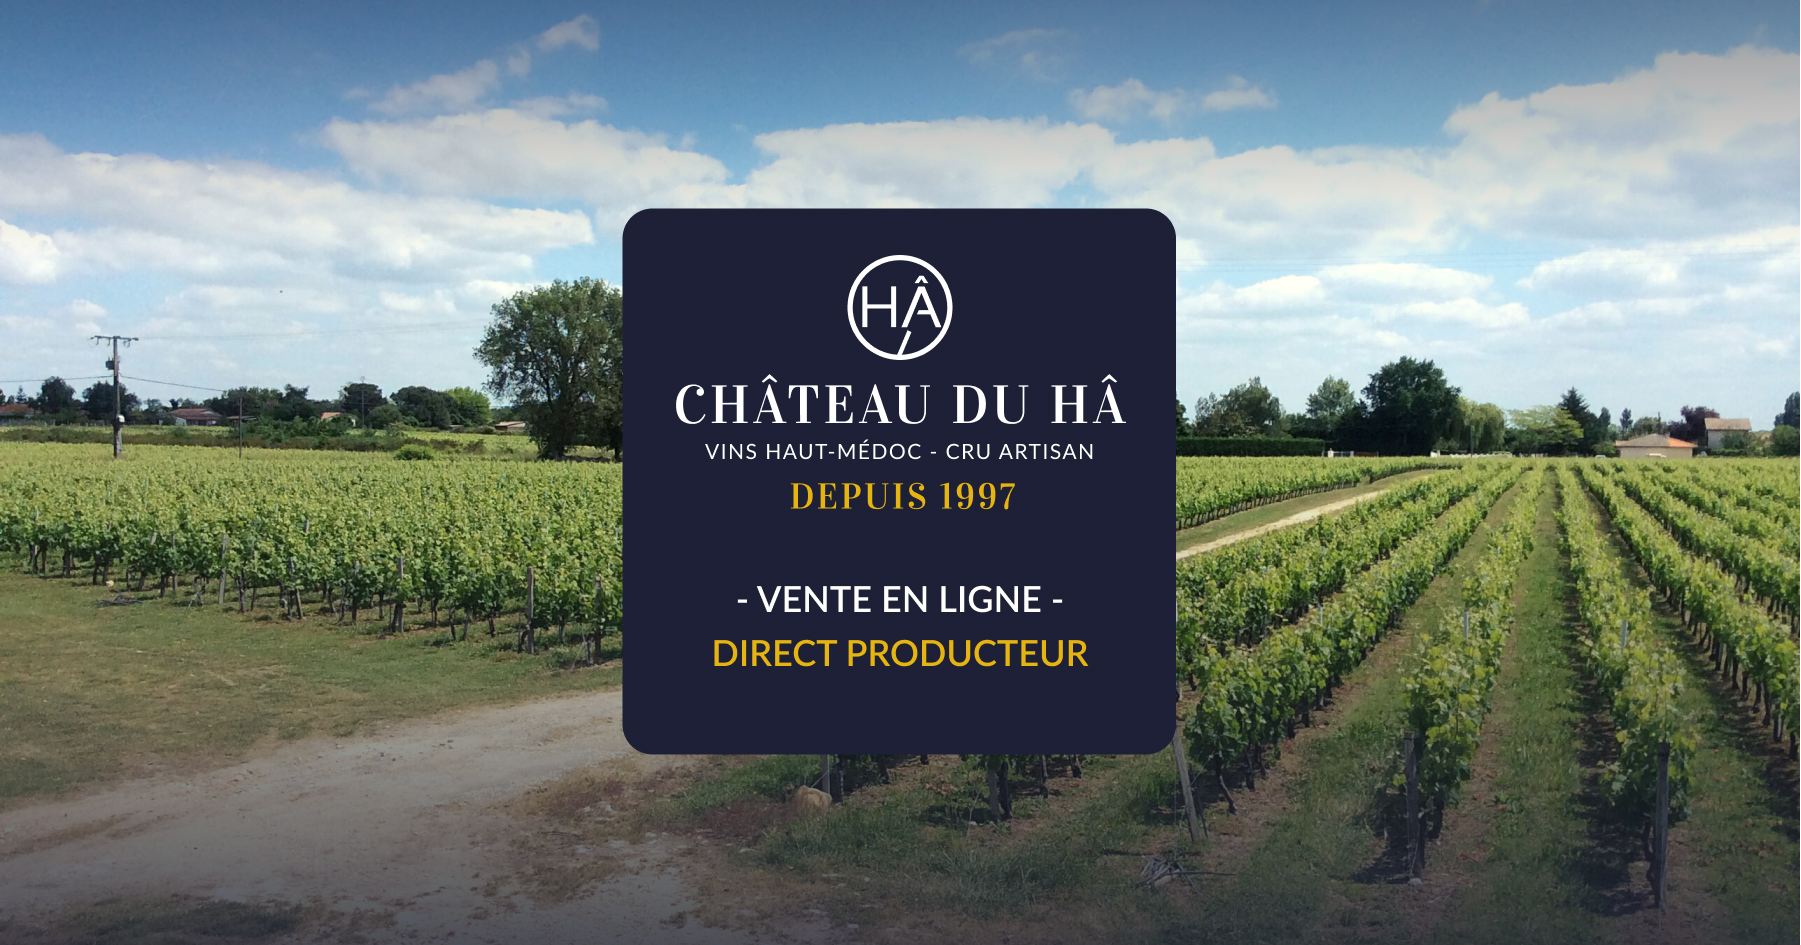 (c) Chateau-du-ha.com